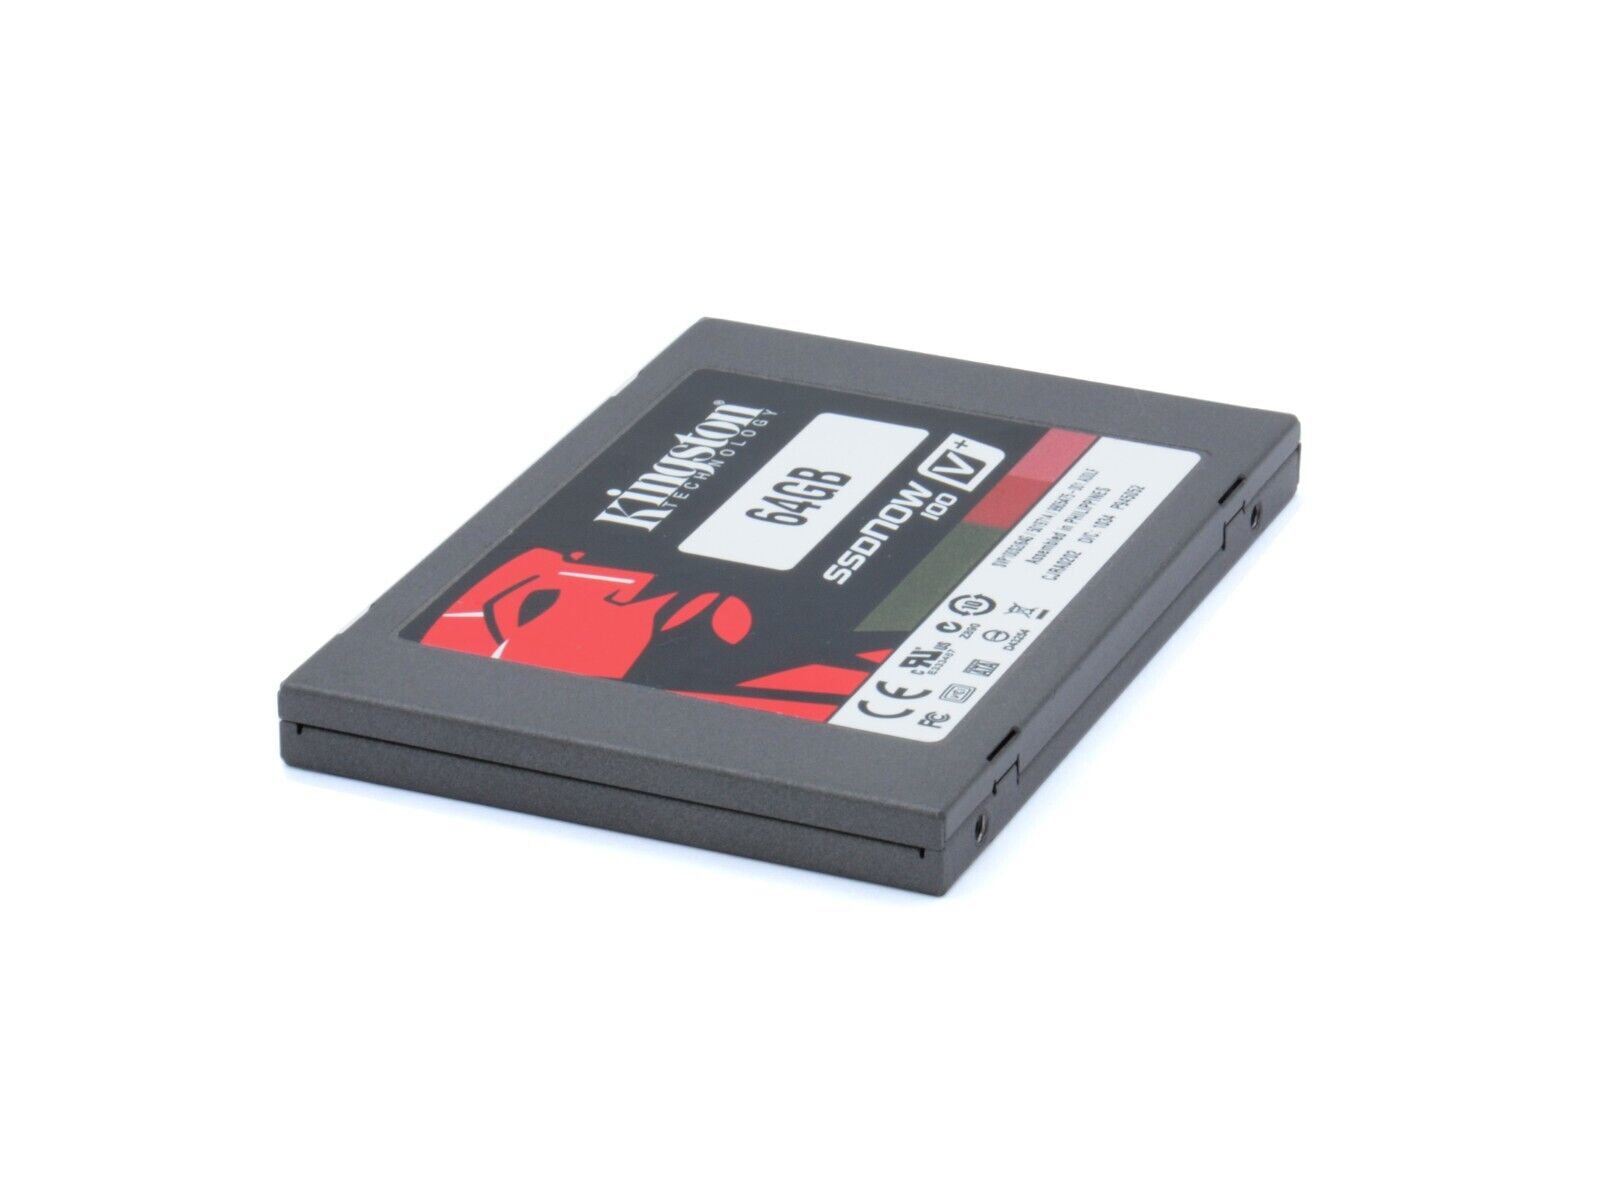 Kingston SVP100S2/64G SSDNow V+100 Series 64GB SATA 3Gbps MLC SSD